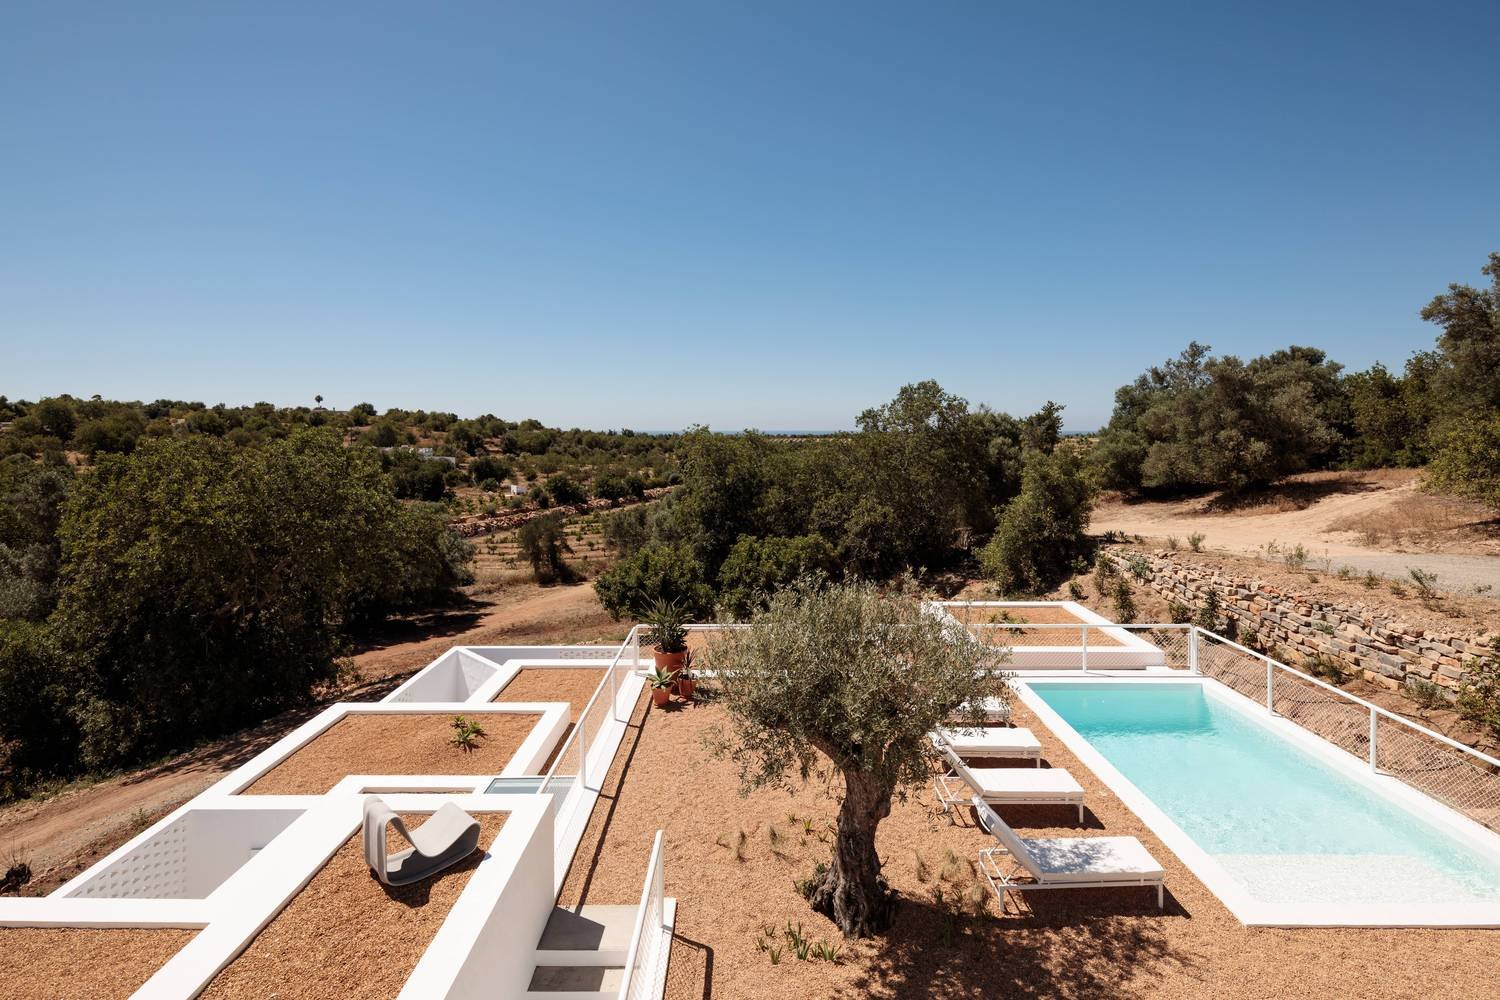 Casa de vacaciones en el algarve en Portugal con fachada e interiores de color blanco vista del exterior